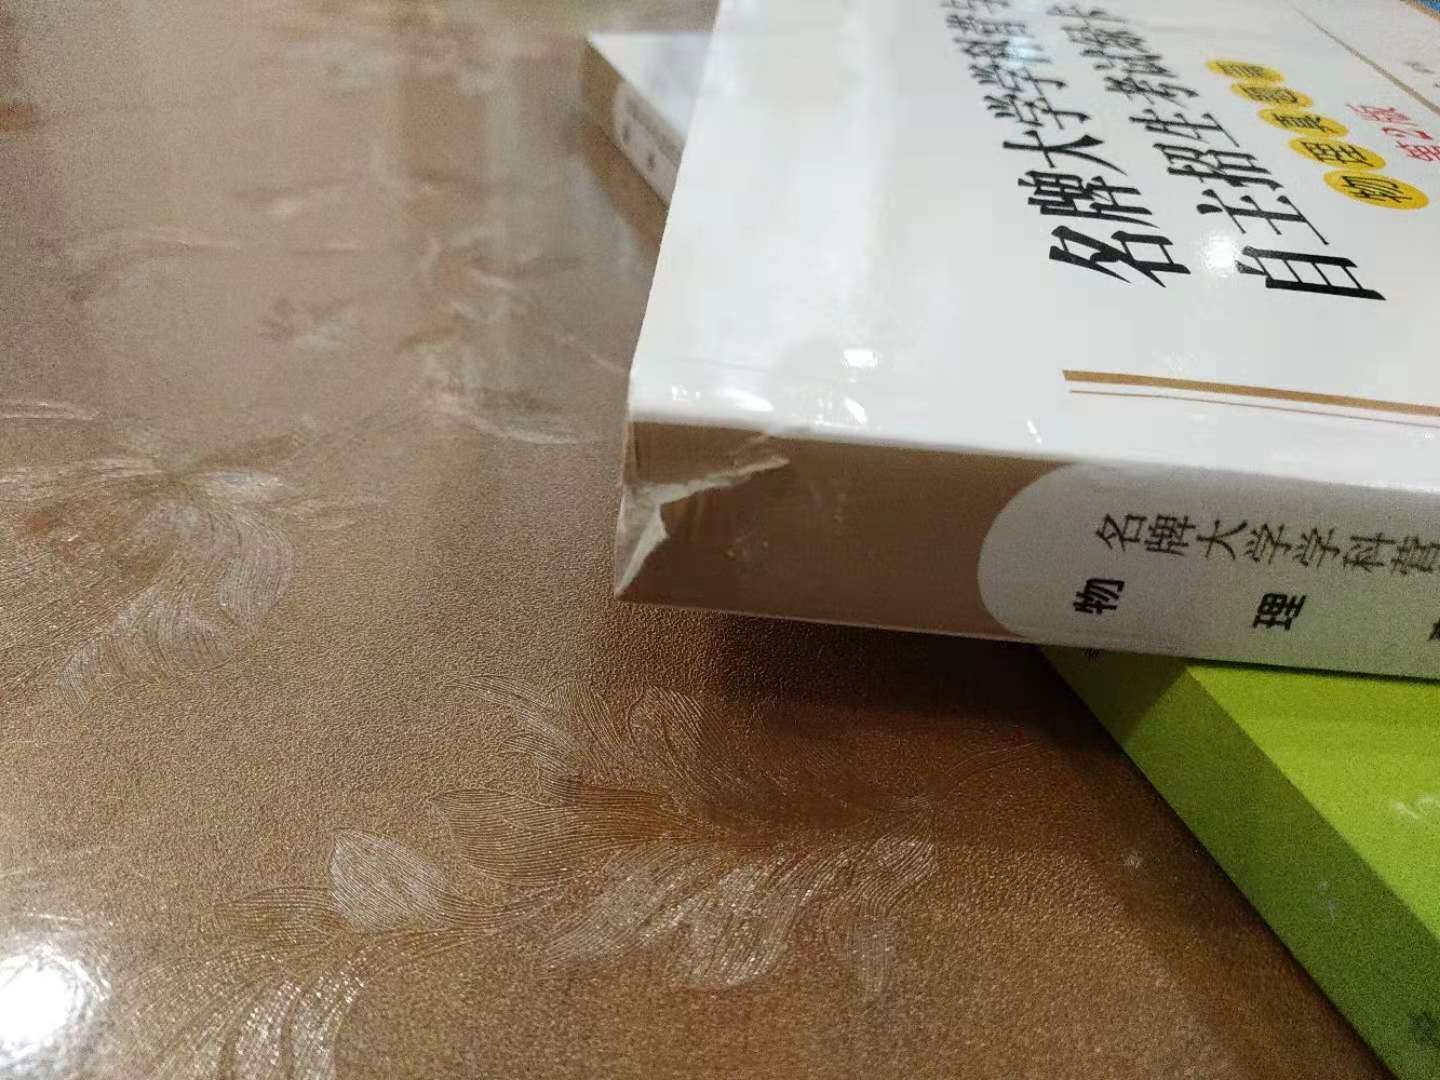 自营的速度杠杠滴，只是包装是否简陋了，外面袋子有点破了，里面一本书两头都破了，算了，反正不影响使用。